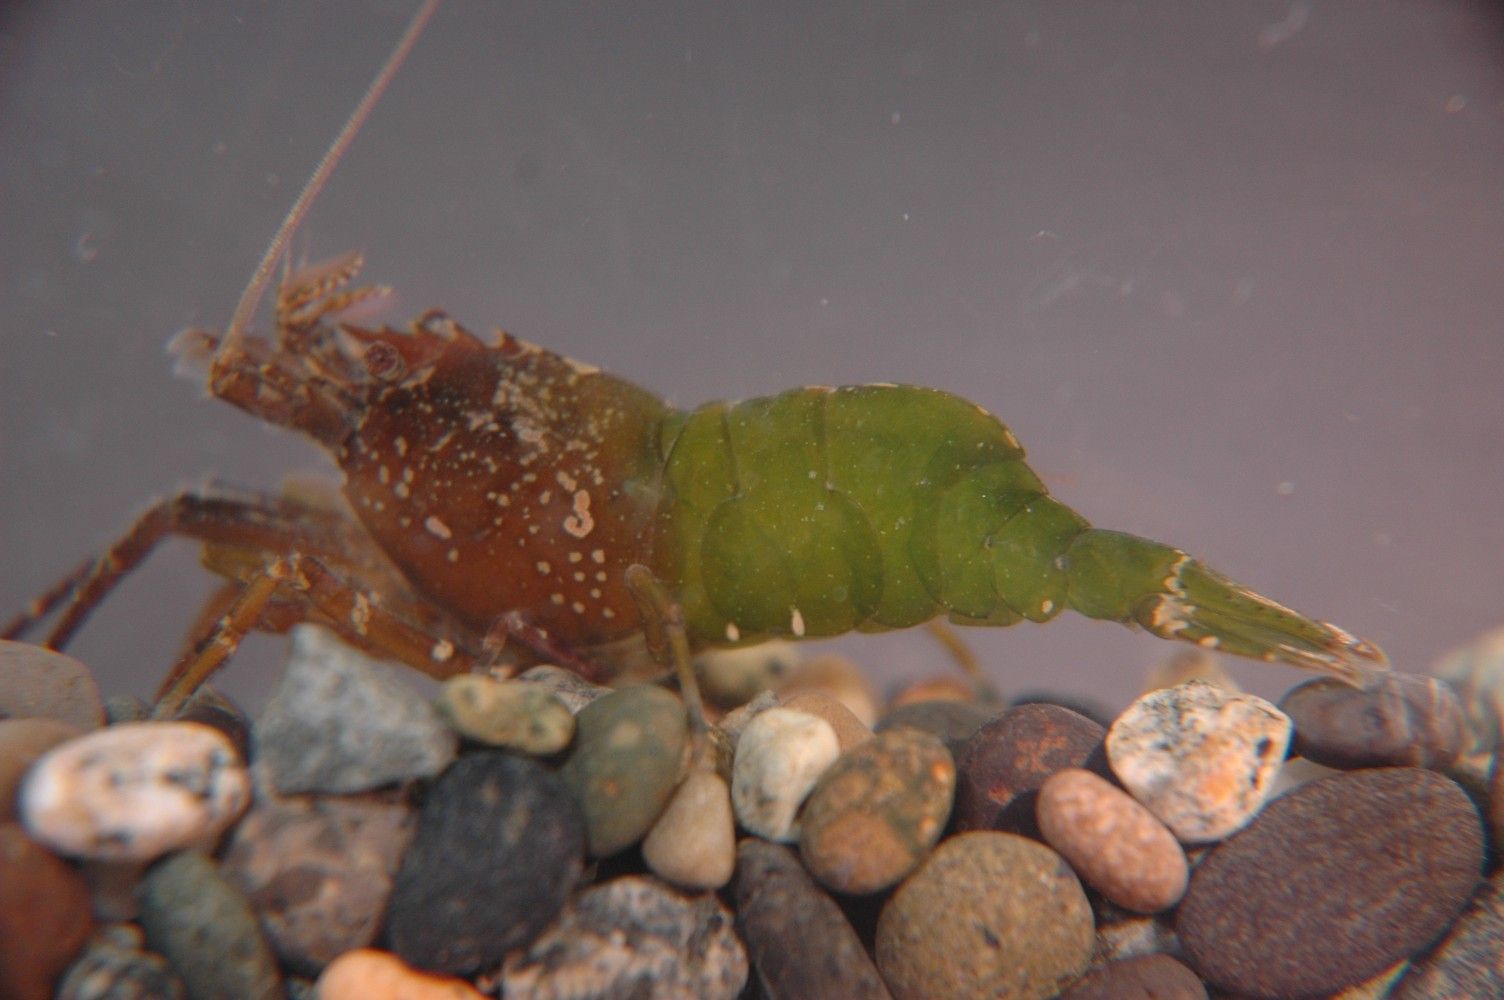 Image of stout coastal shrimp